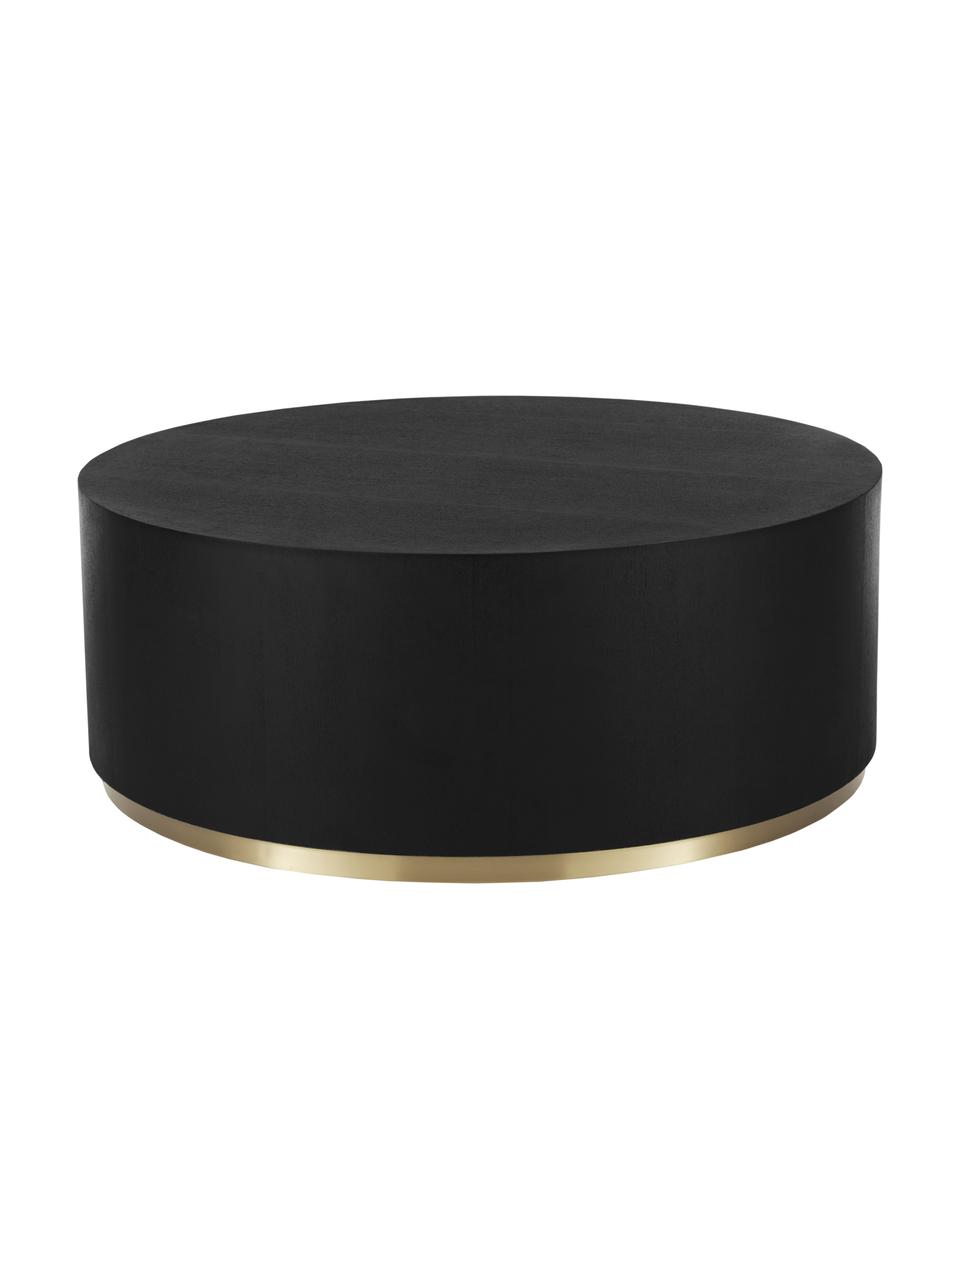 Ronde XL-salontafel Clarice in zwart, Frame: MDF met eikenhoutfineer, Voet: gecoat metaal, Zwart, goudkleurig, Ø 90 x H 35 cm